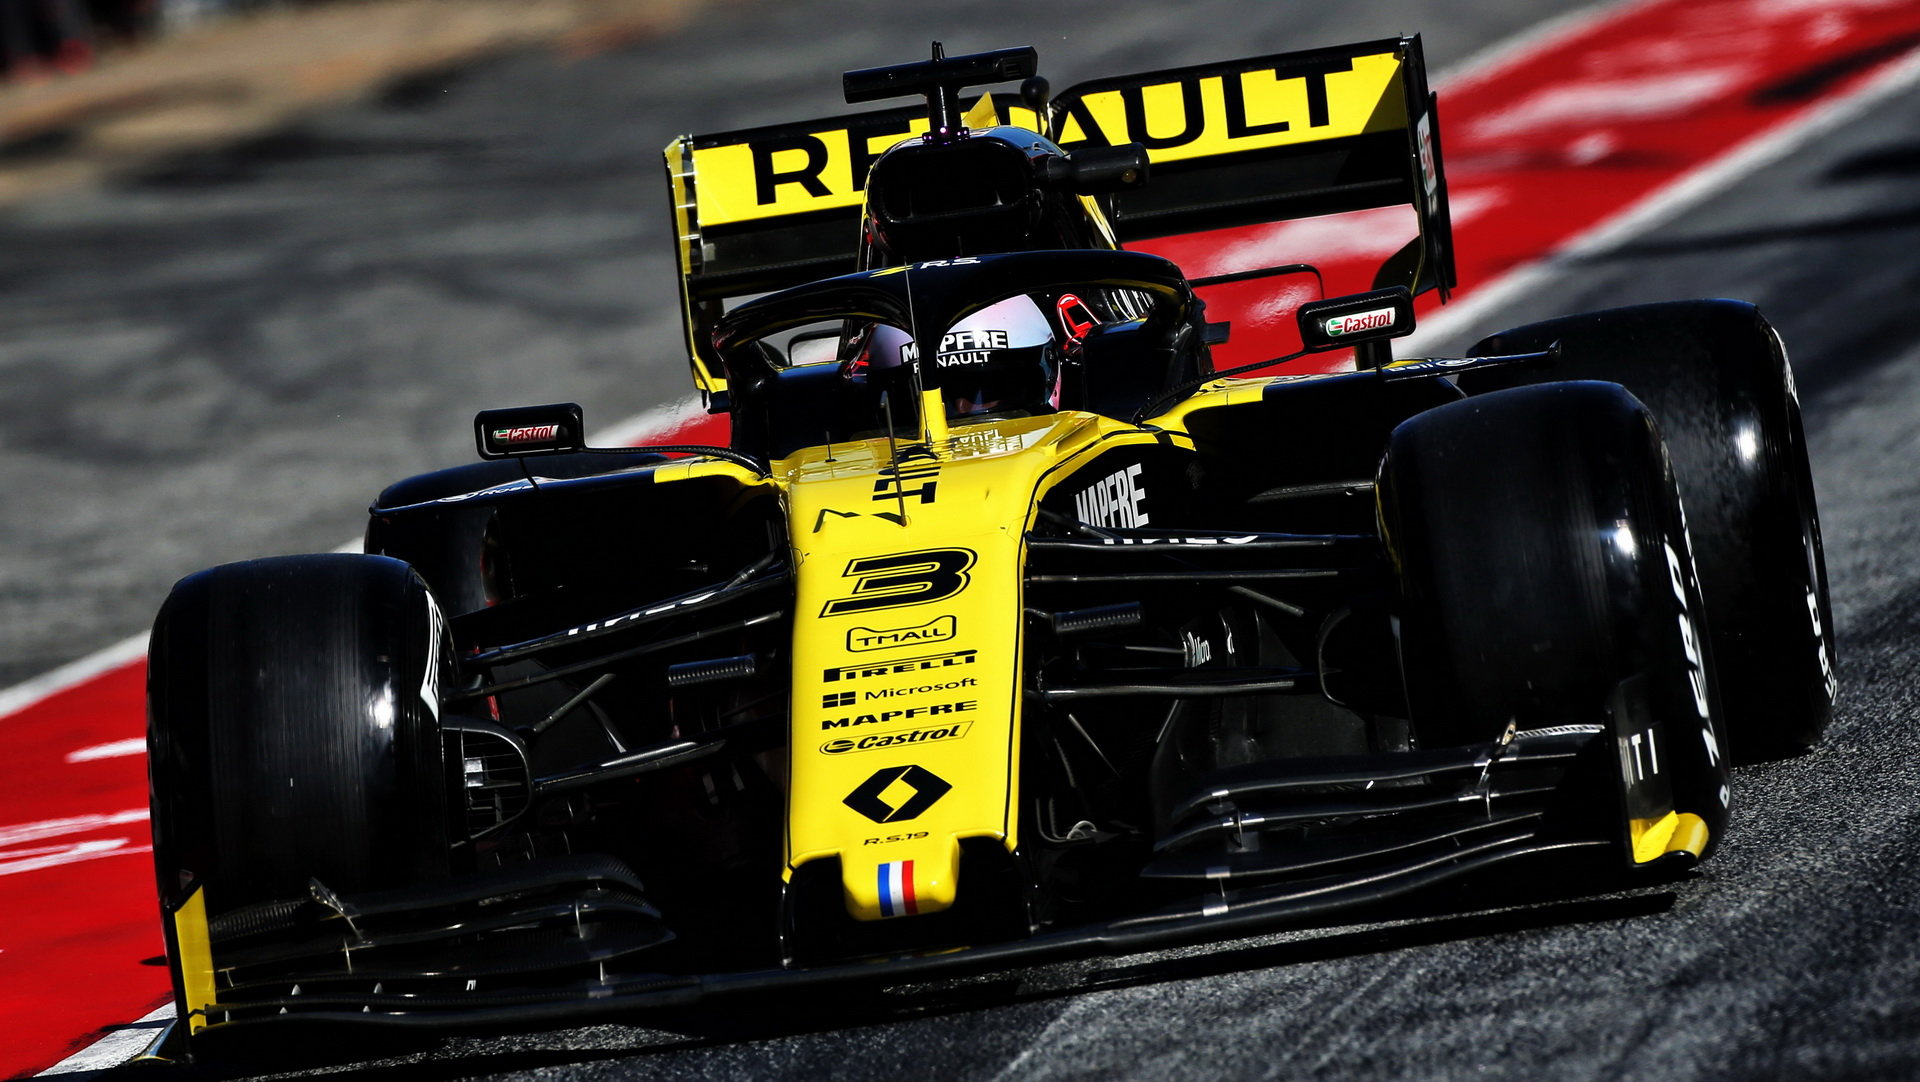 Daniel Ricciardo v rámci druhého dne druhých předsezonních testů v Barceloně